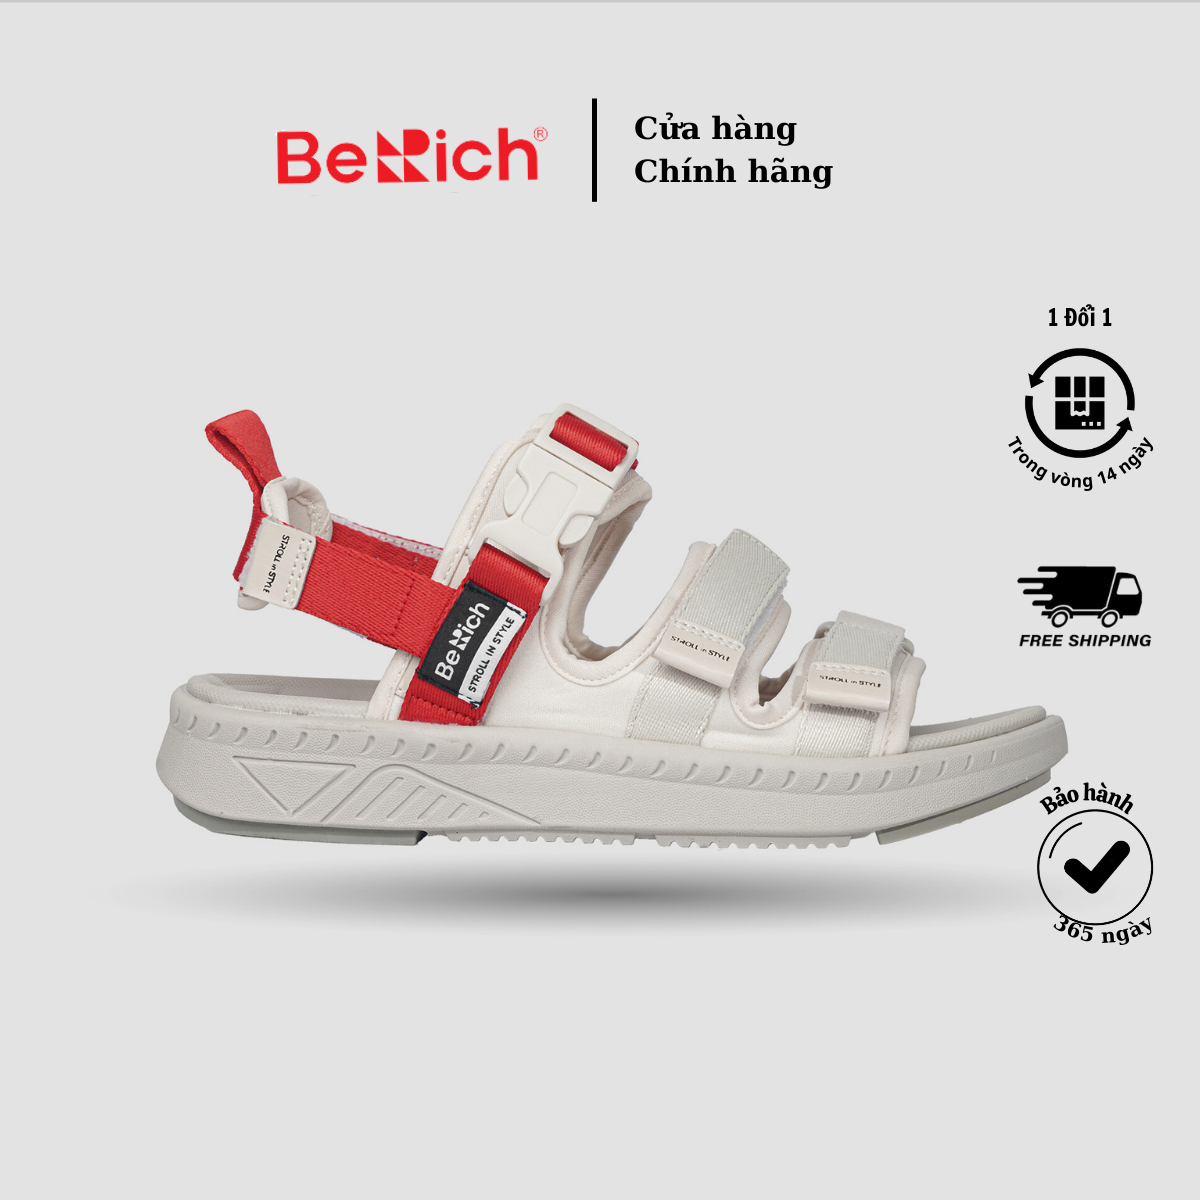 Giày Sandal Nam Nữ Unisex BeRich - 279,3 Quai, Màu sắc Be x Đỏ